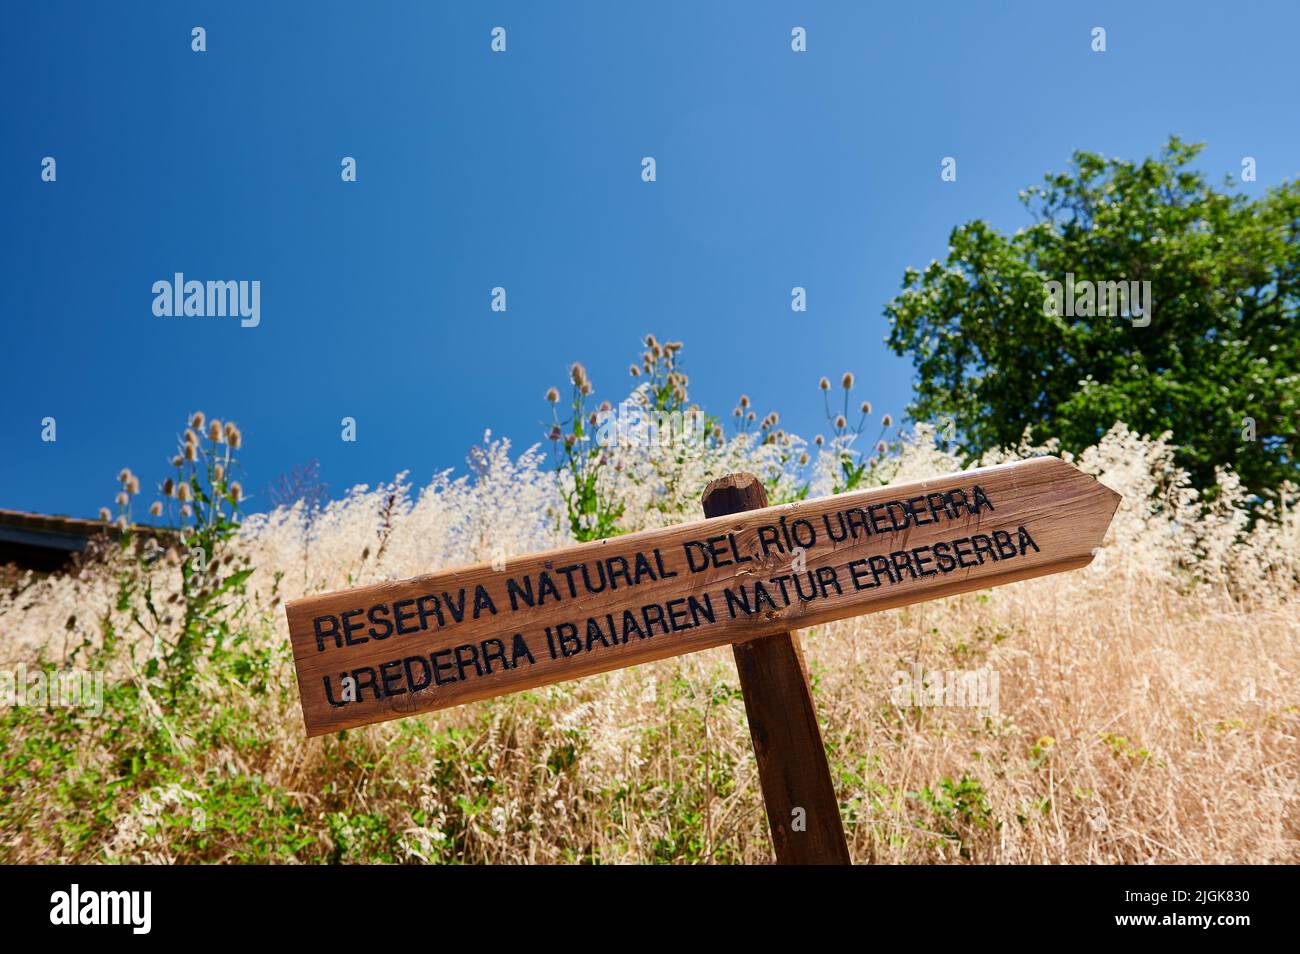 Poste de signalisation de la réserve naturelle Urederra, Baquedano, Navarre, Espagne, Europe Banque D'Images